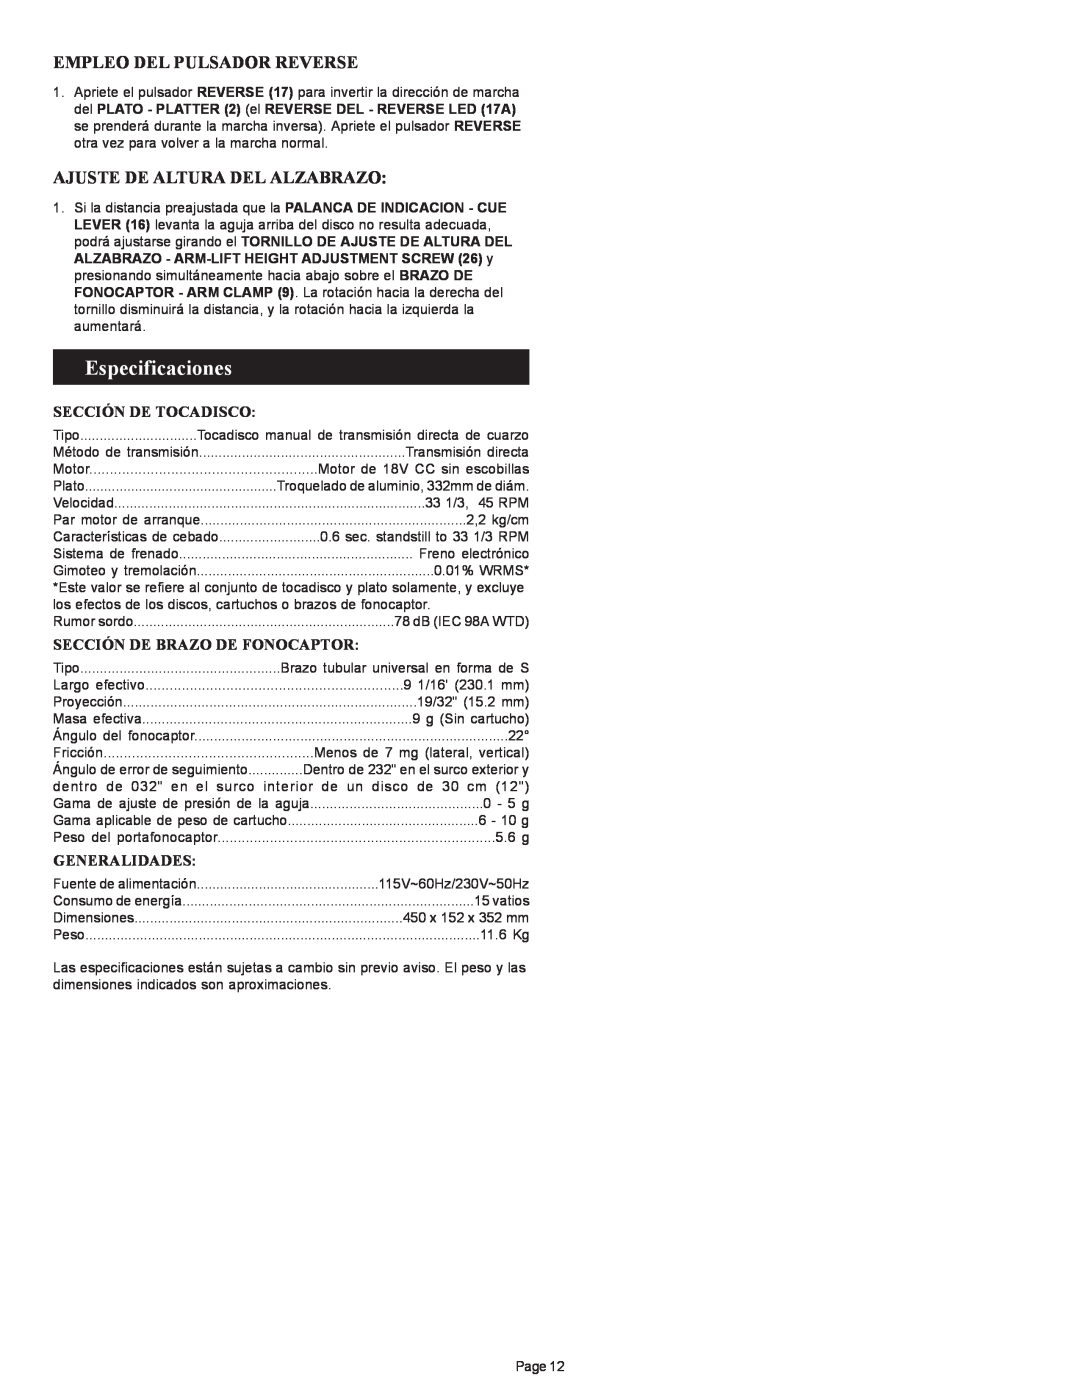 Gemini PT 2100 manual Especificaciones, Empleo Del Pulsador Reverse, Ajuste De Altura Del Alzabrazo, Sección De Tocadisco 